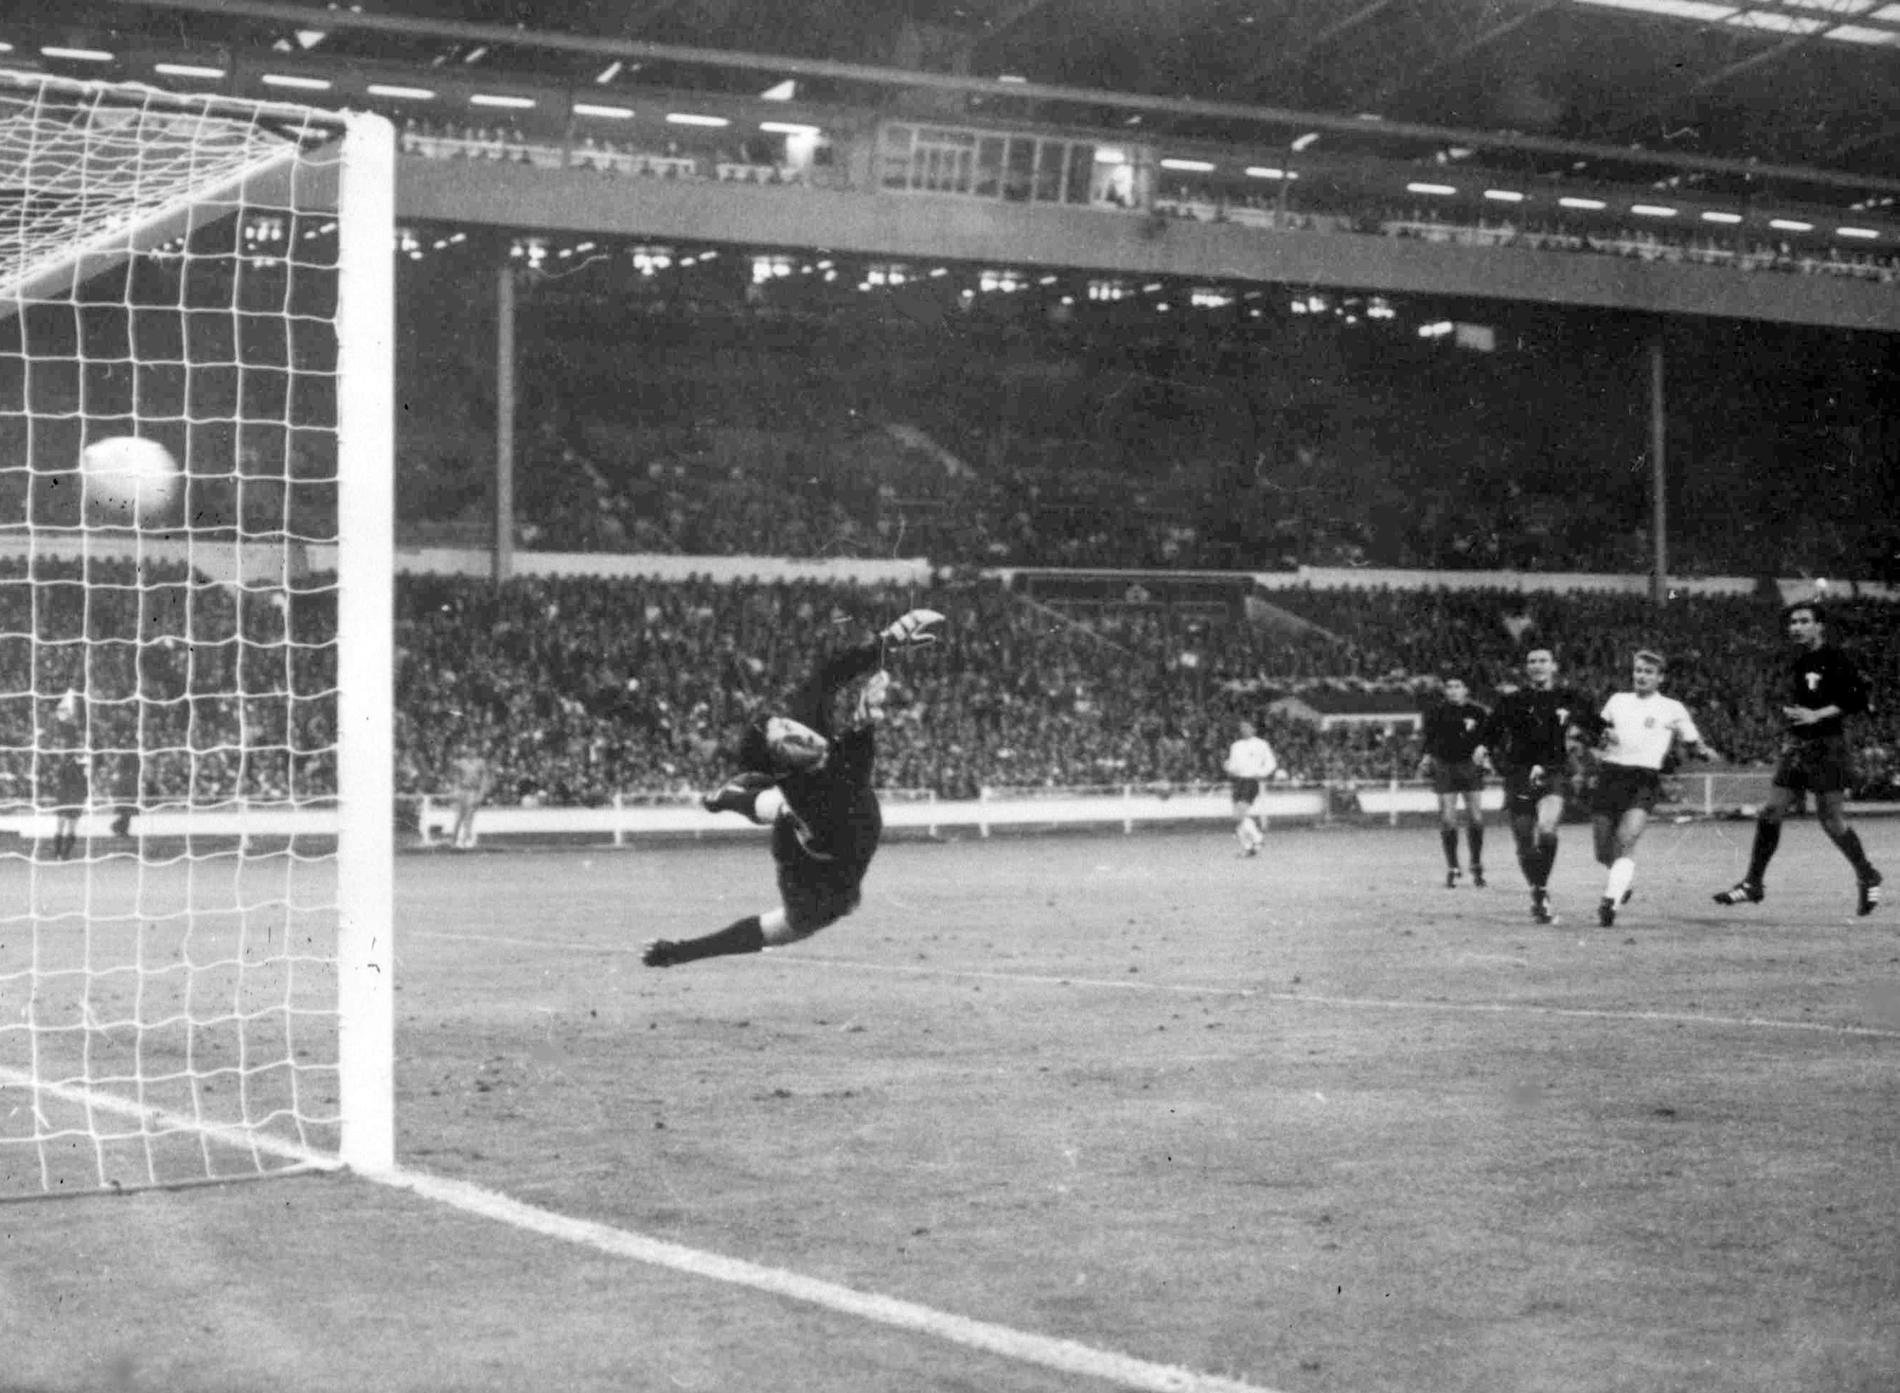 Campionato mondiale 1966: Bobby Charlton segna per l'Inghilterra contro il Messico a Wembley.